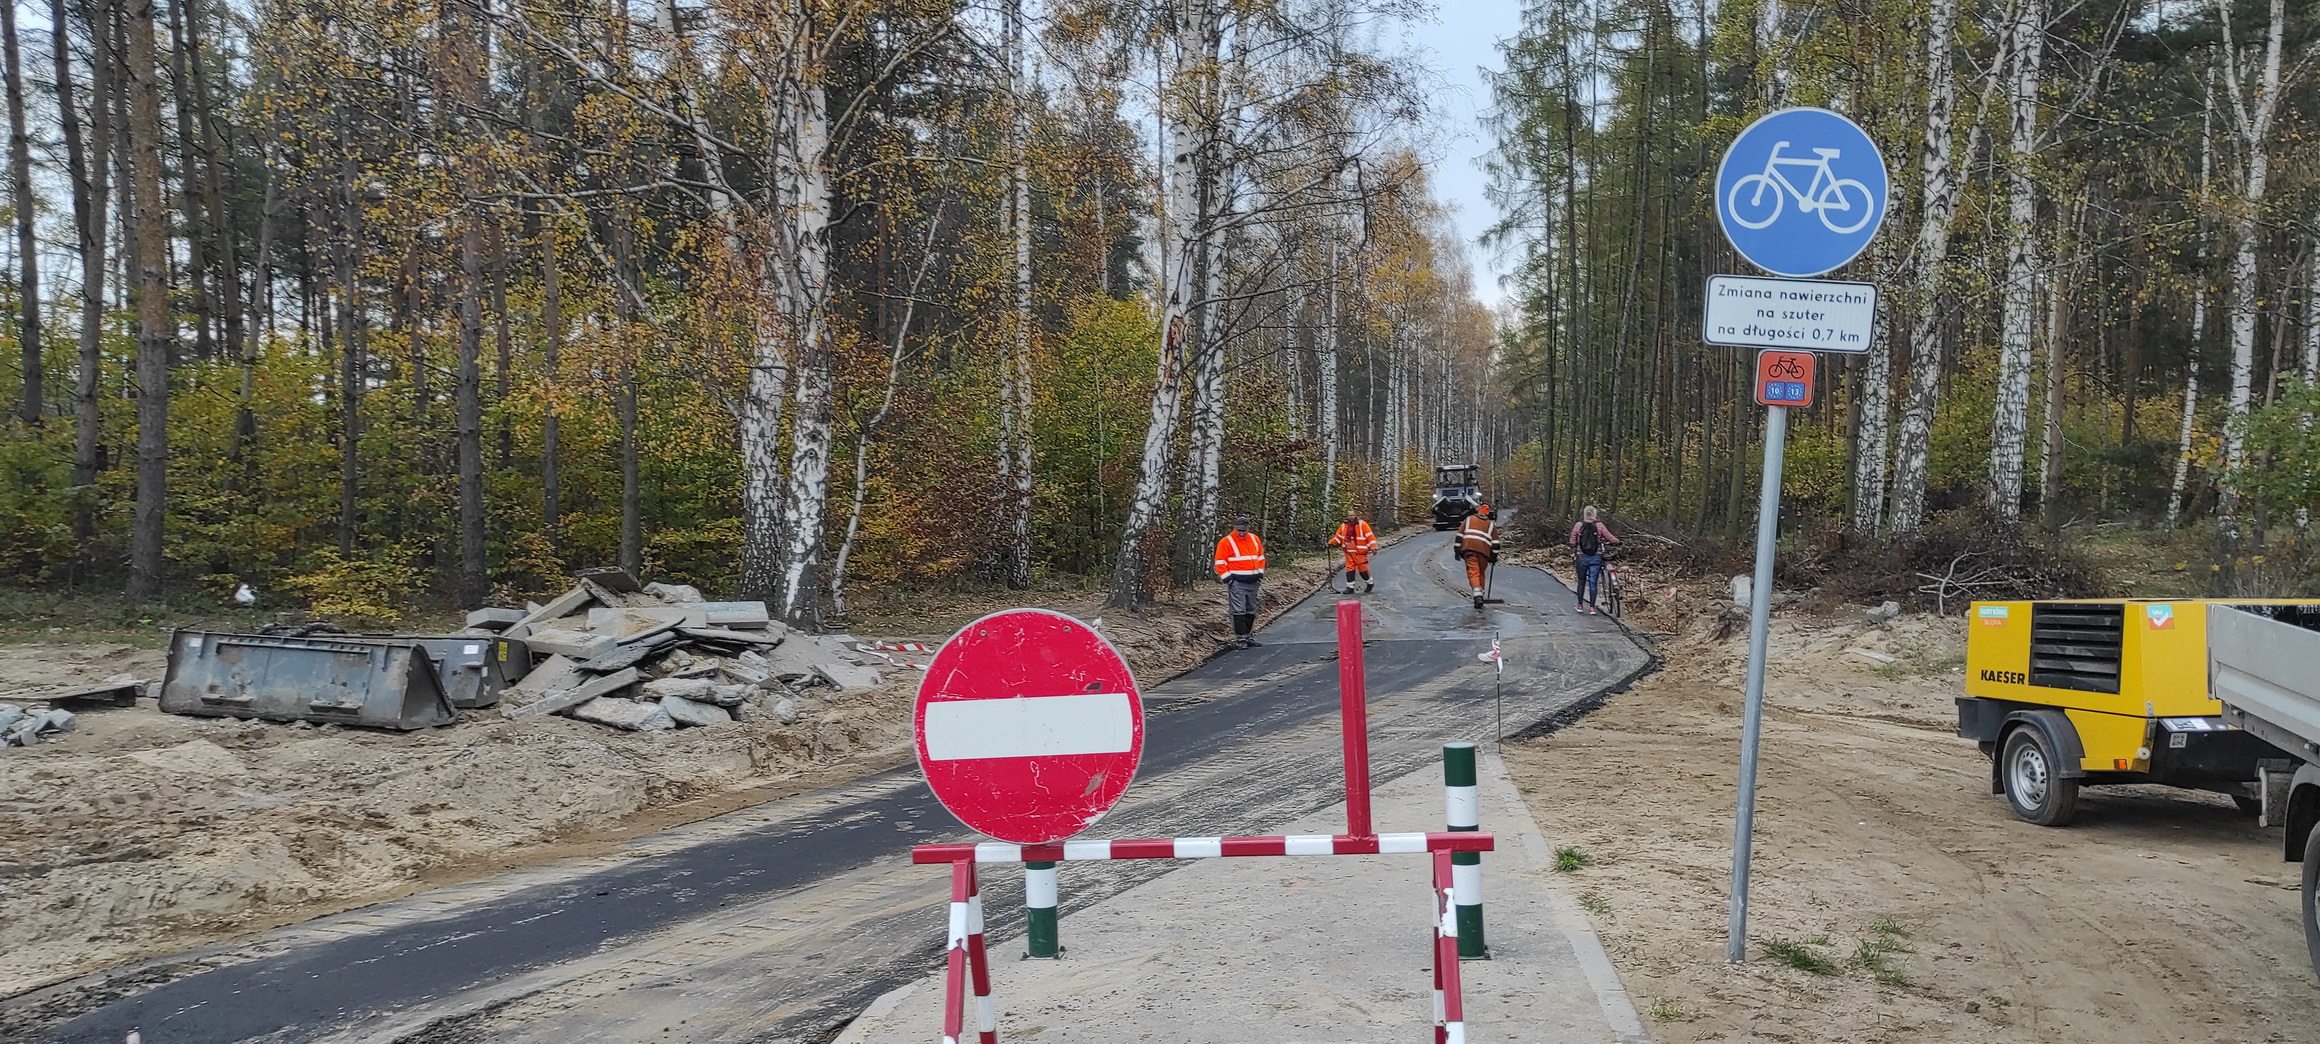 Gmina Kosakowo rozpoczęła budowę trasy EuroVelo 10/13